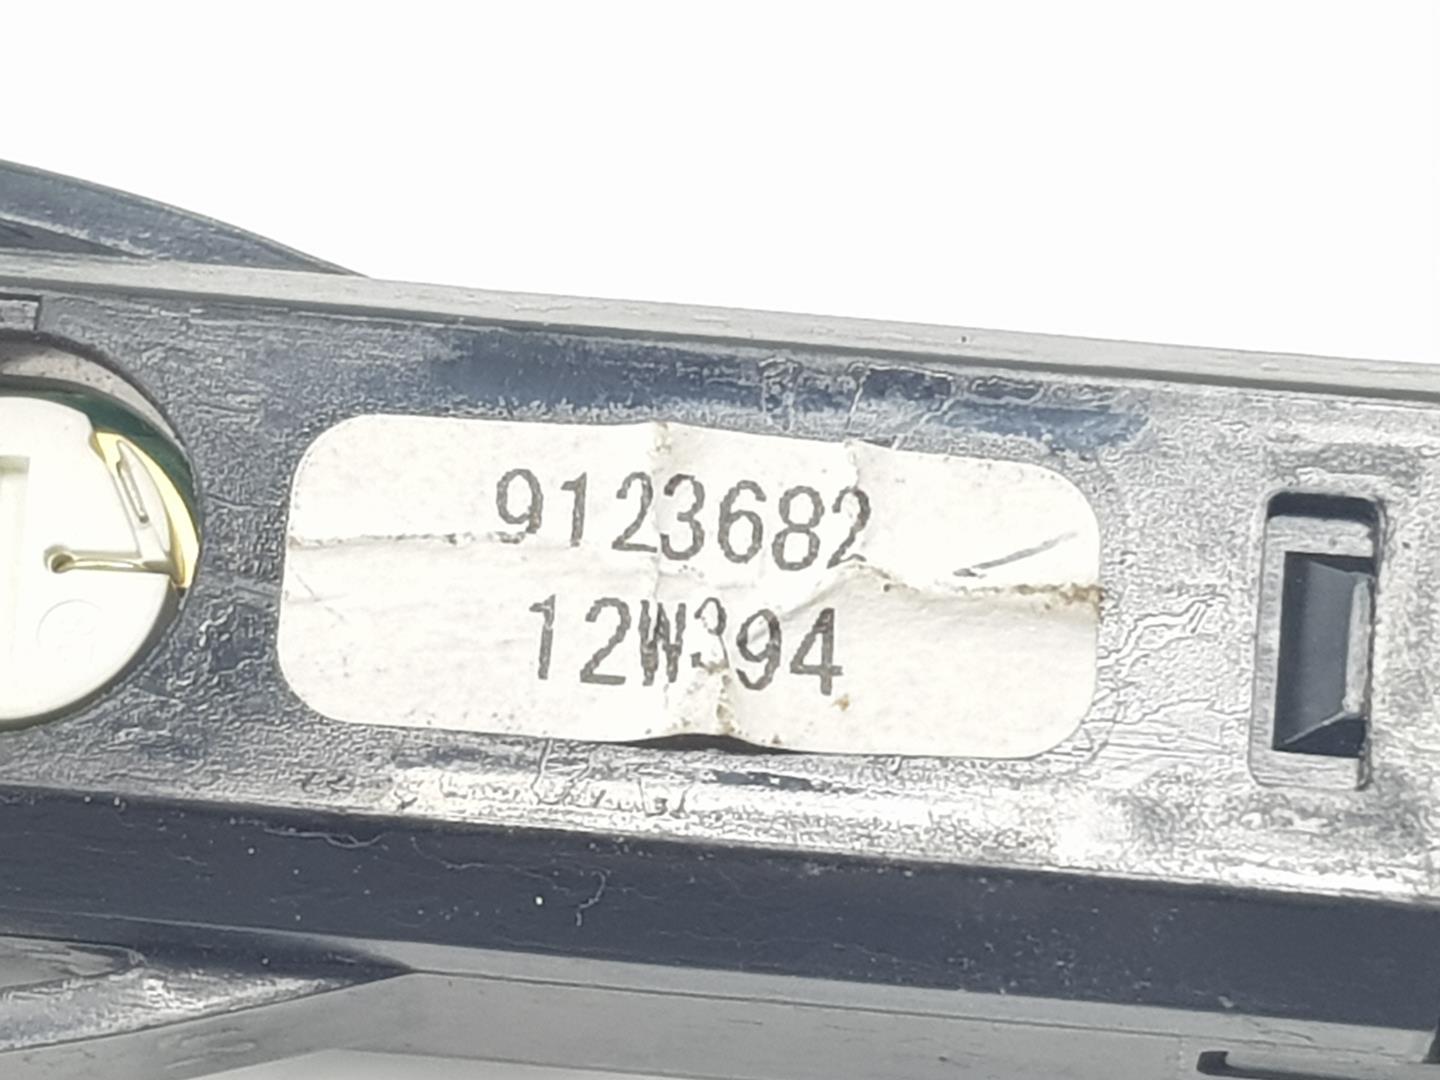 VOLVO V40 2 generation (2012-2020) Hazard button 9123682, 9123682 23093303